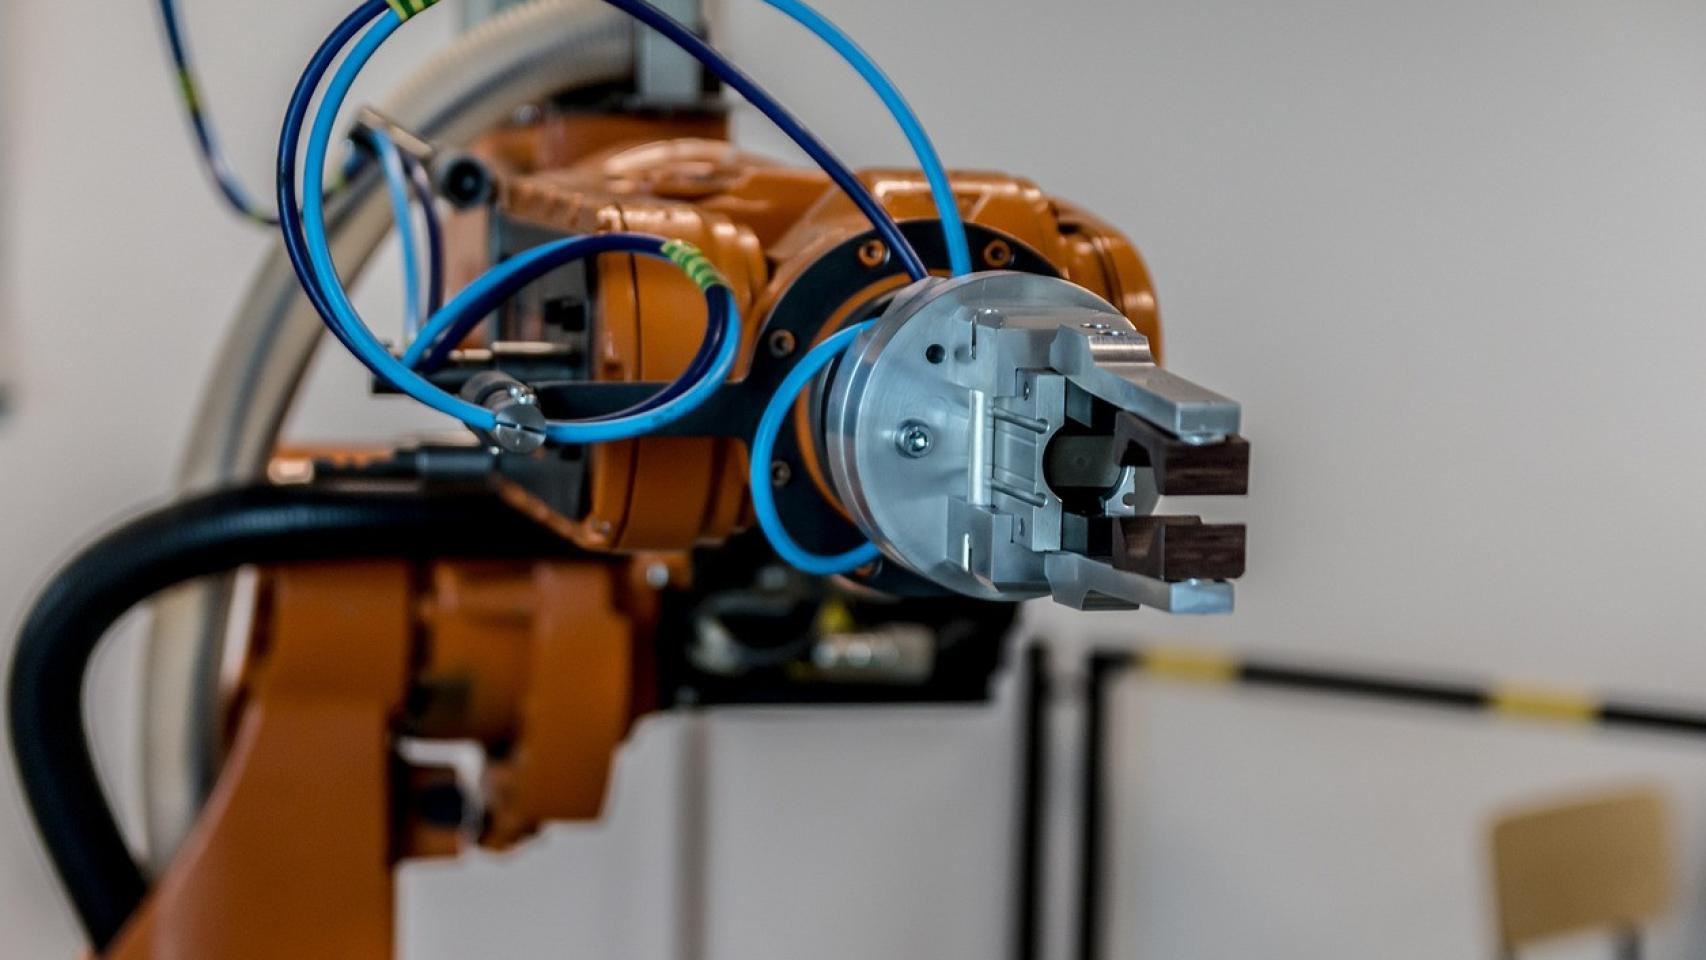 Los robots móviles obligan a reconvertir los perfiles laborales actuales en las plantas hacia puestos más cualificados, de valor añadido y digitales.